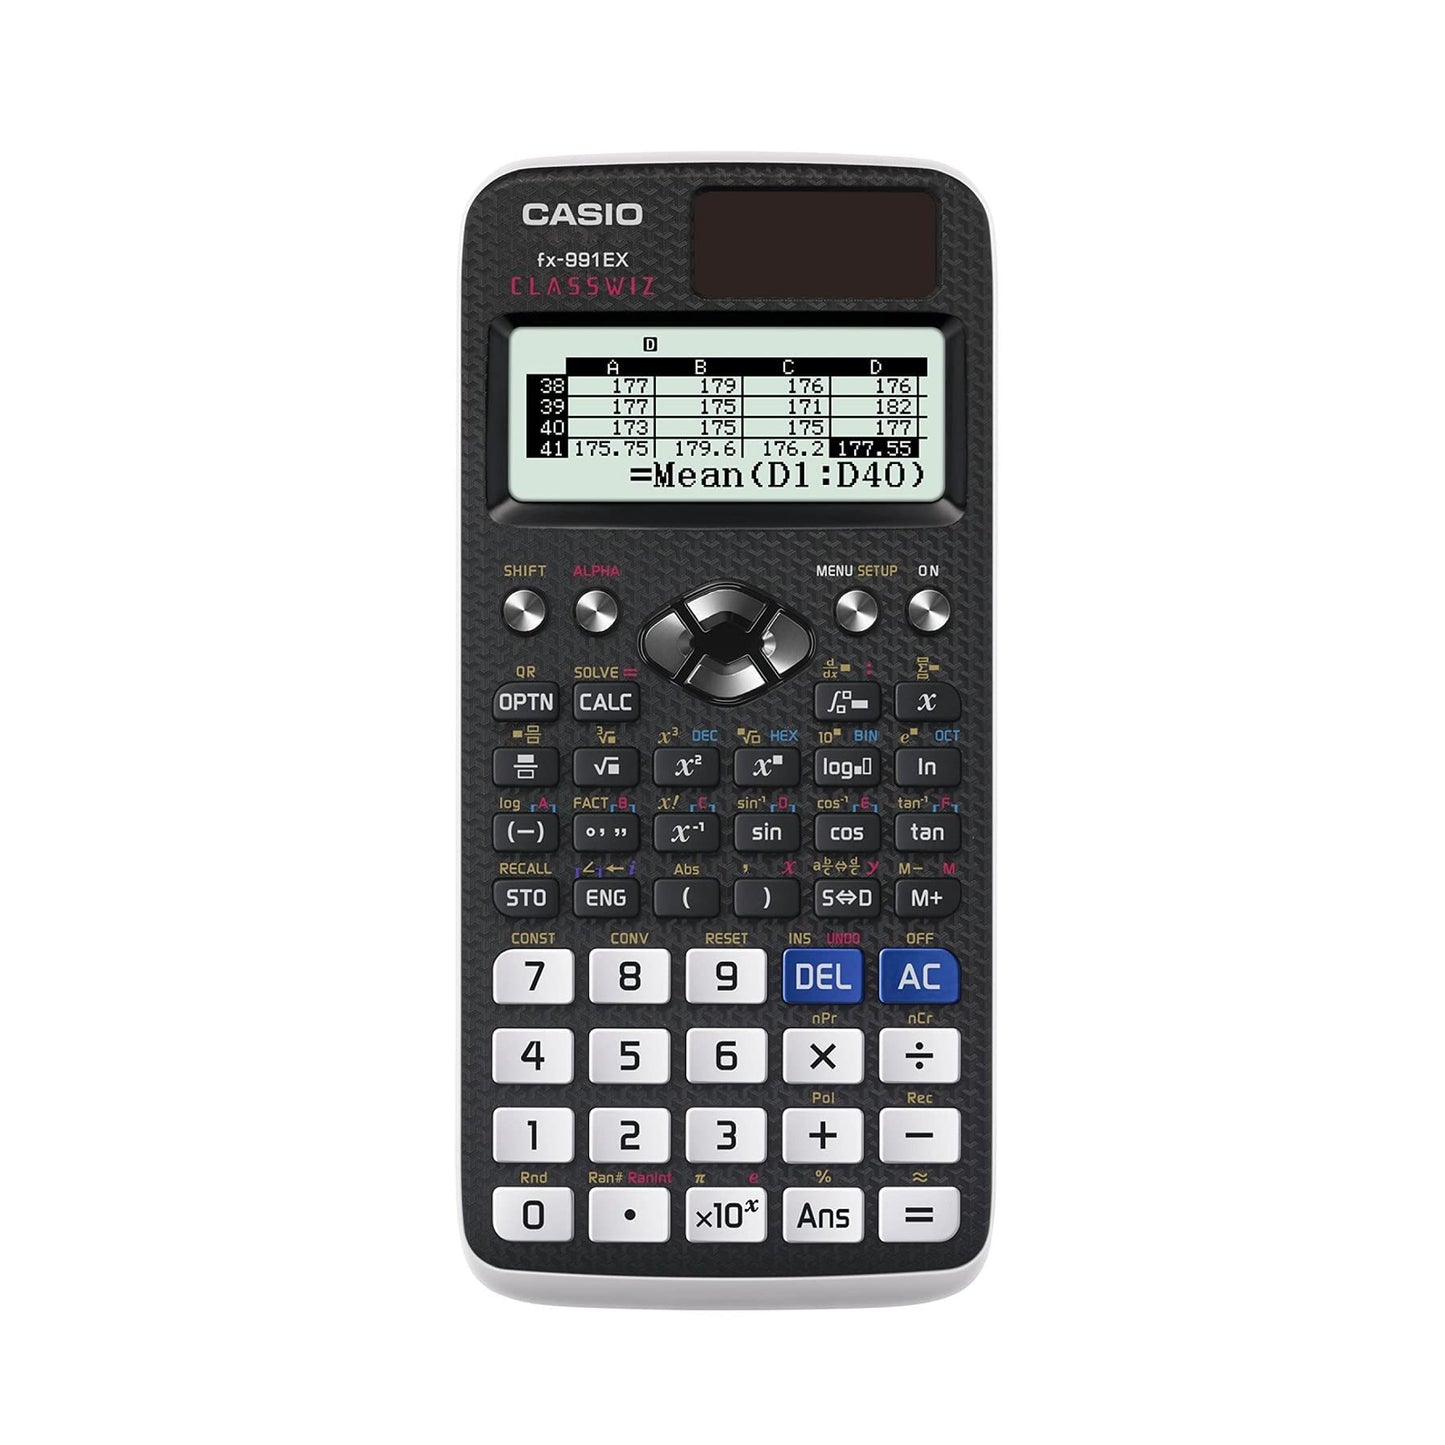 CASIO FX-991EX Advanced Engineering/Scientific Calculator (UK VERSION), Black